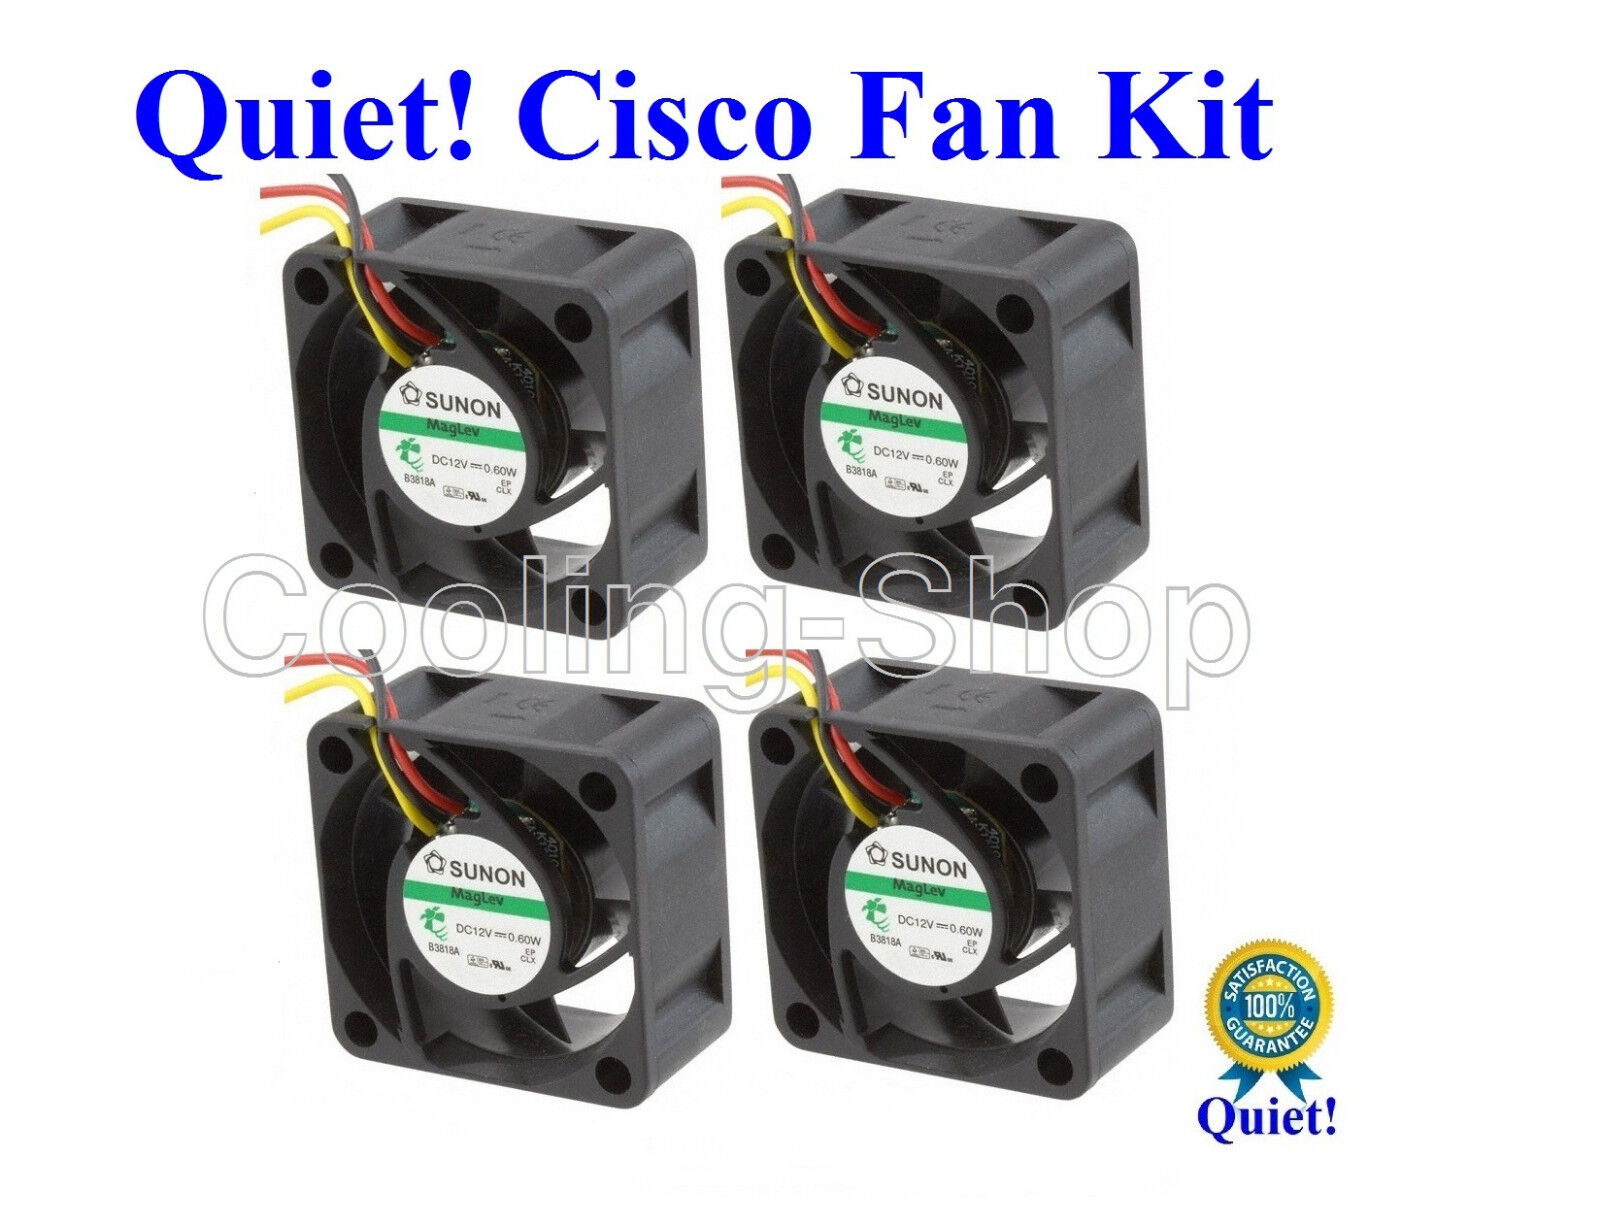 Cisco SG500-52P Super Quiet Cisco Replacement Fan Kit  (4x new fans) 18dBA Noise